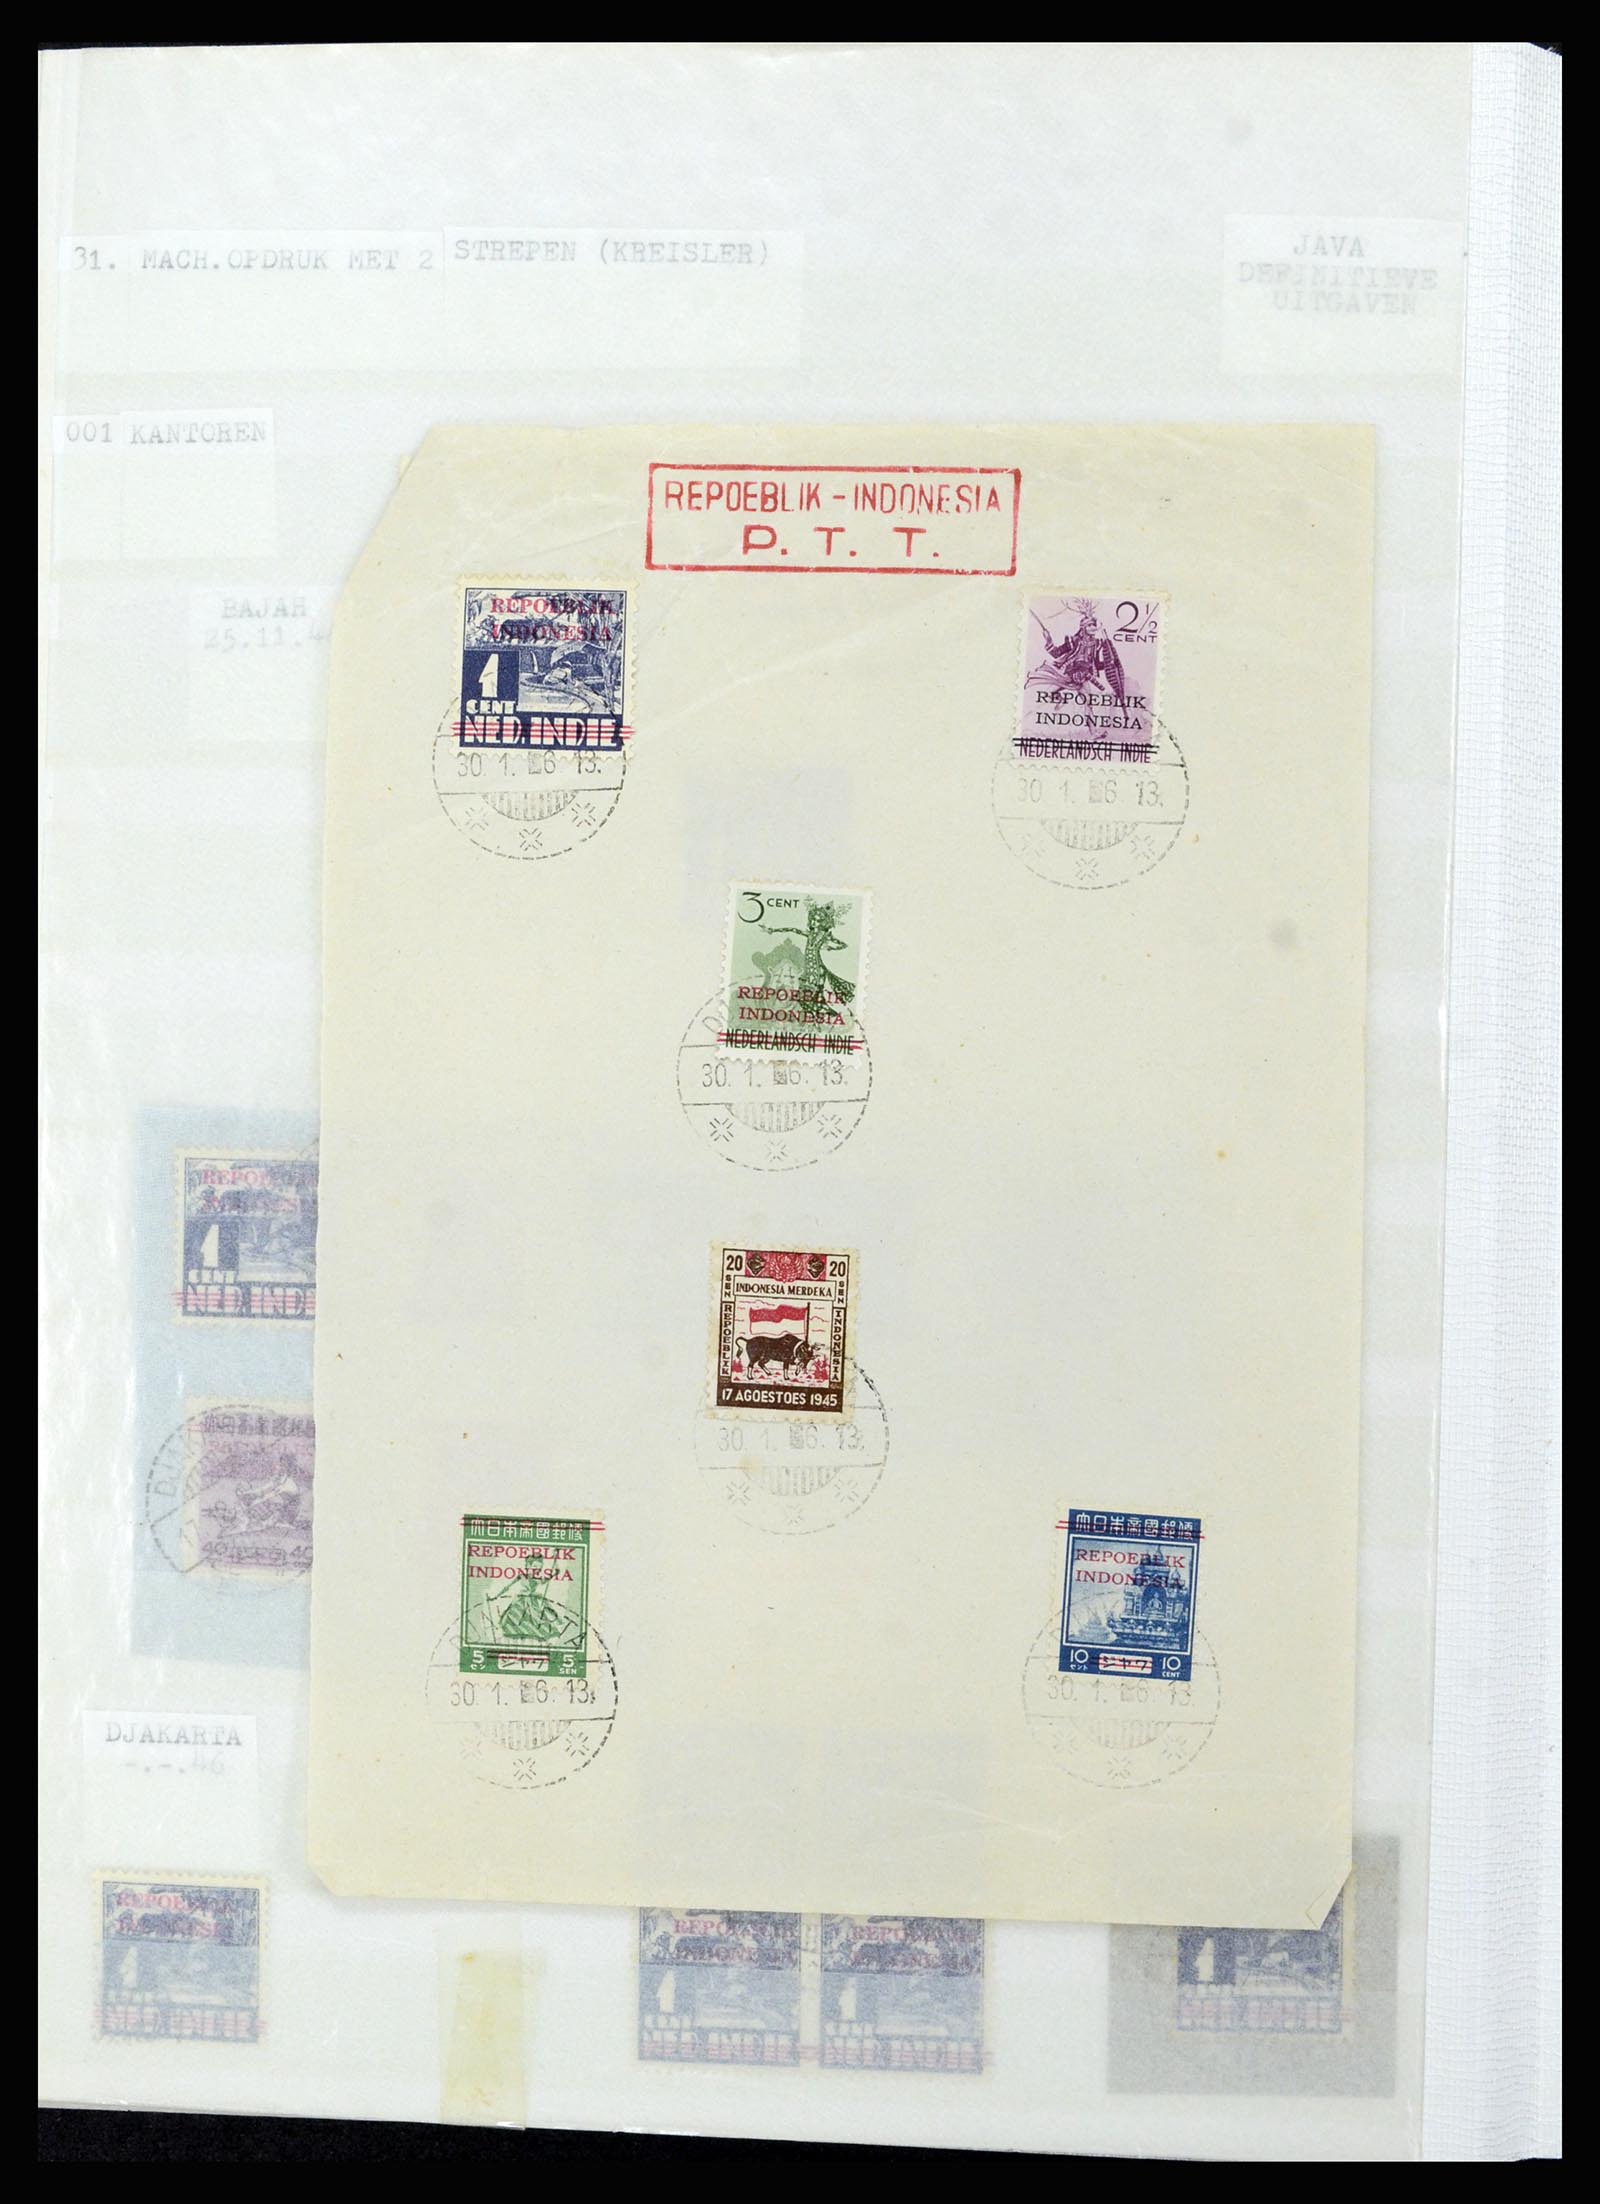 36742 297 - Stamp collection 36742 Dutch Indies interim period 1945-1949.